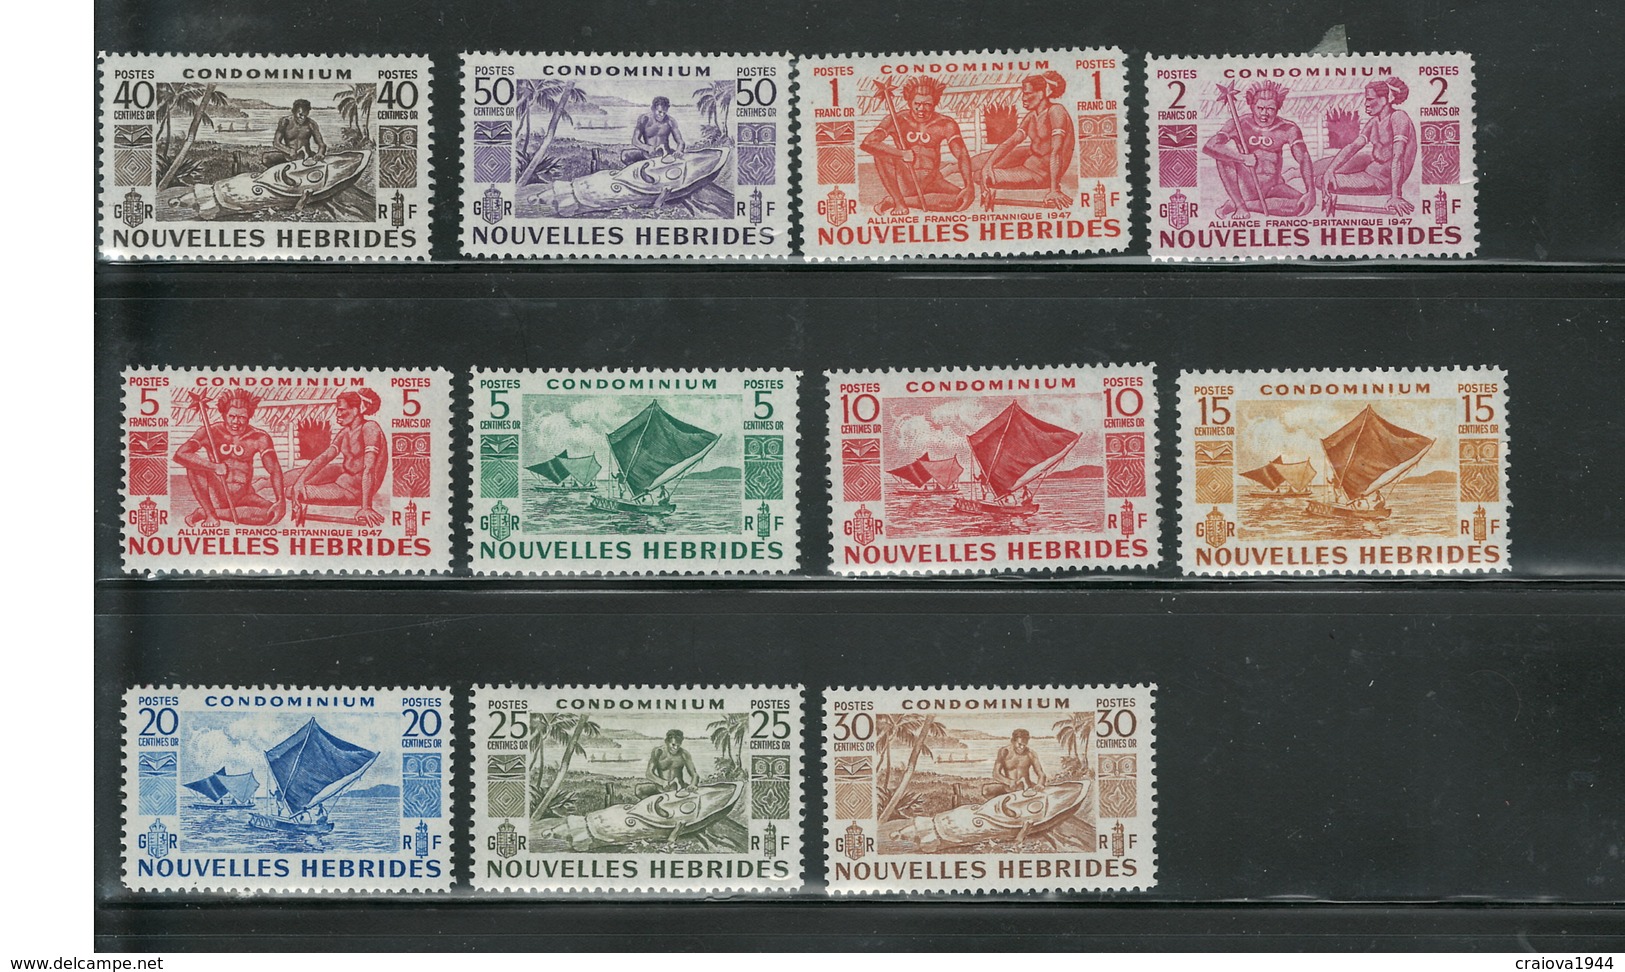 NOUVELLES HEBRIDES 1953 "OCCUPATIONS" #83 - 93 C.V. $73.50 MH - Unused Stamps